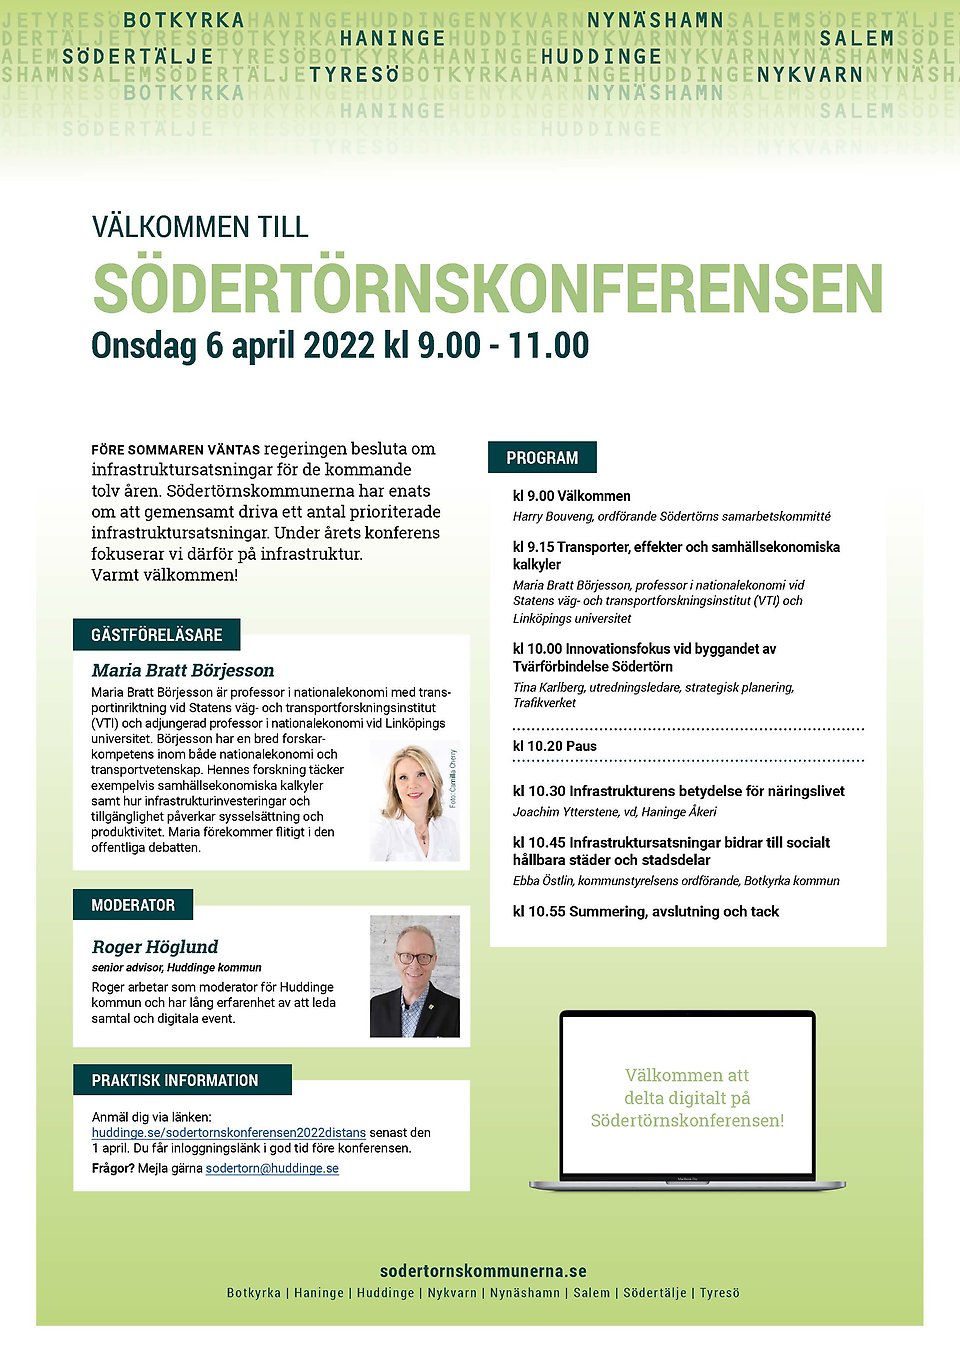 Inbjudan till Södertörnskonferensen 2022